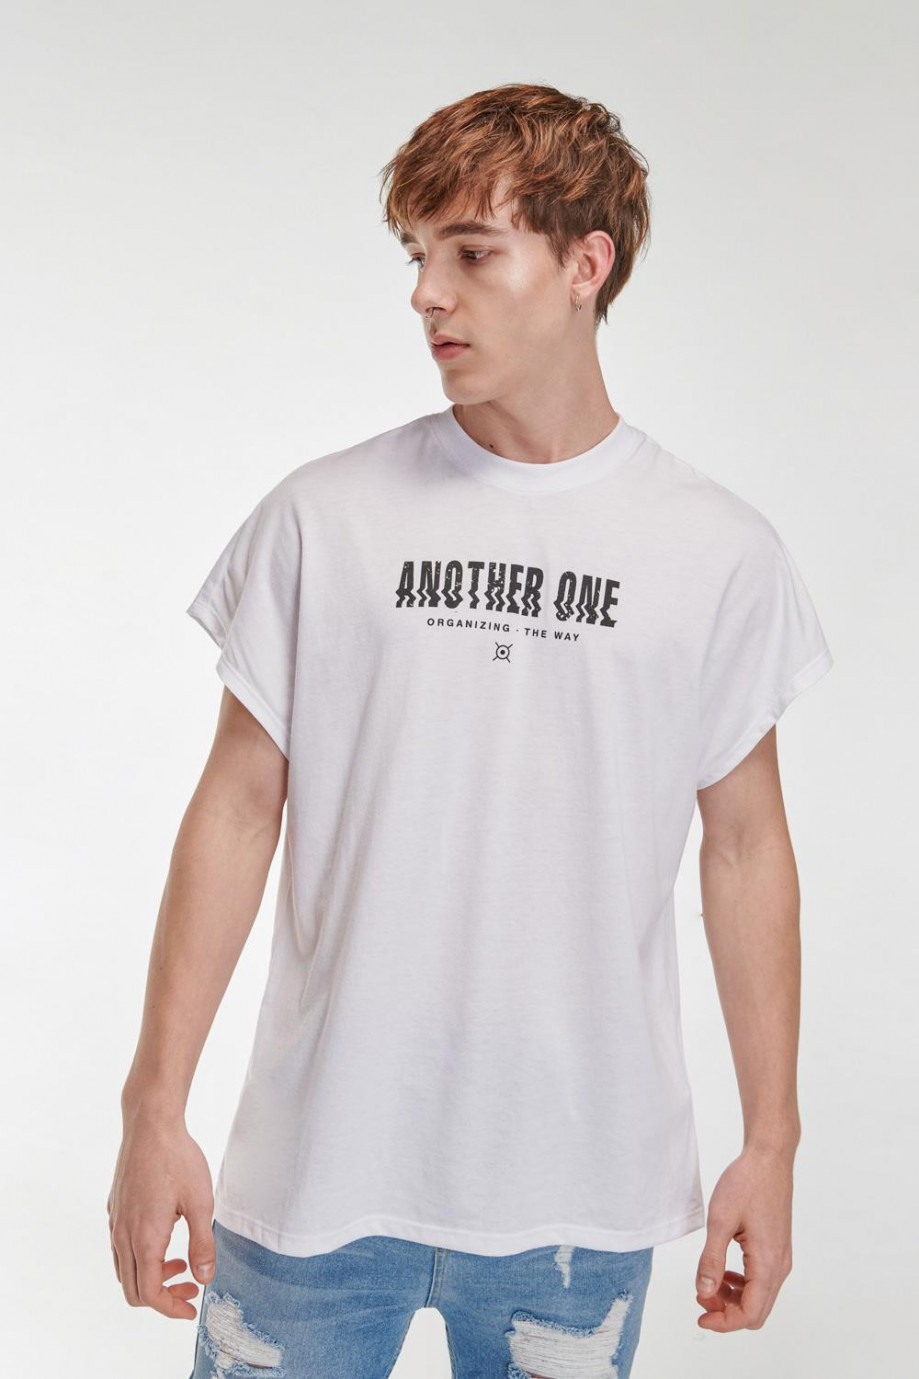 Camiseta unicolor manga sisa con estampados de letras